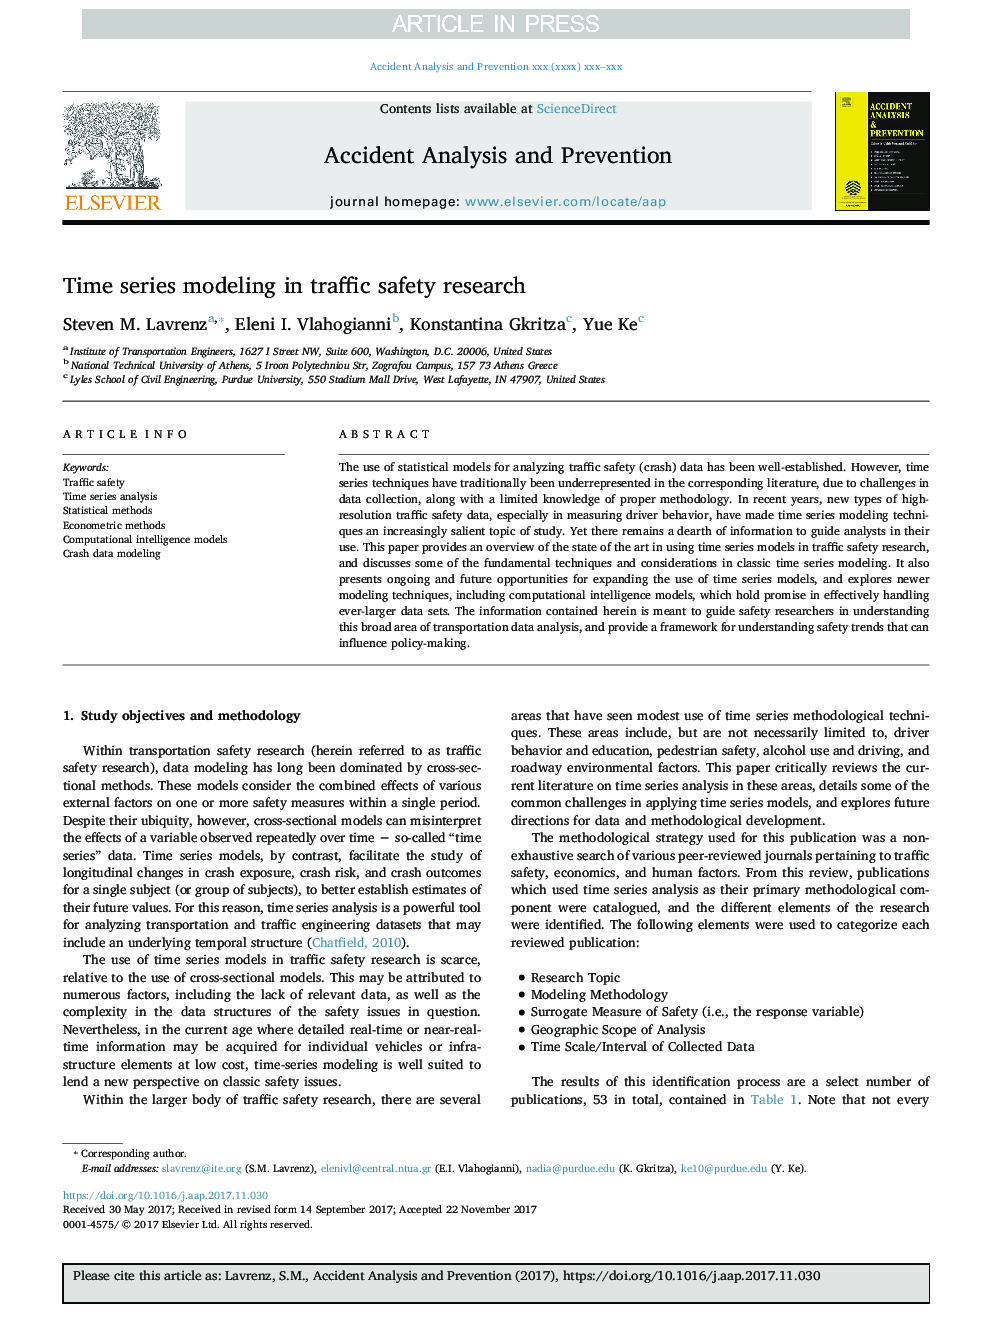 مدل سازی سری زمانی در تحقیقات ایمنی ترافیک 